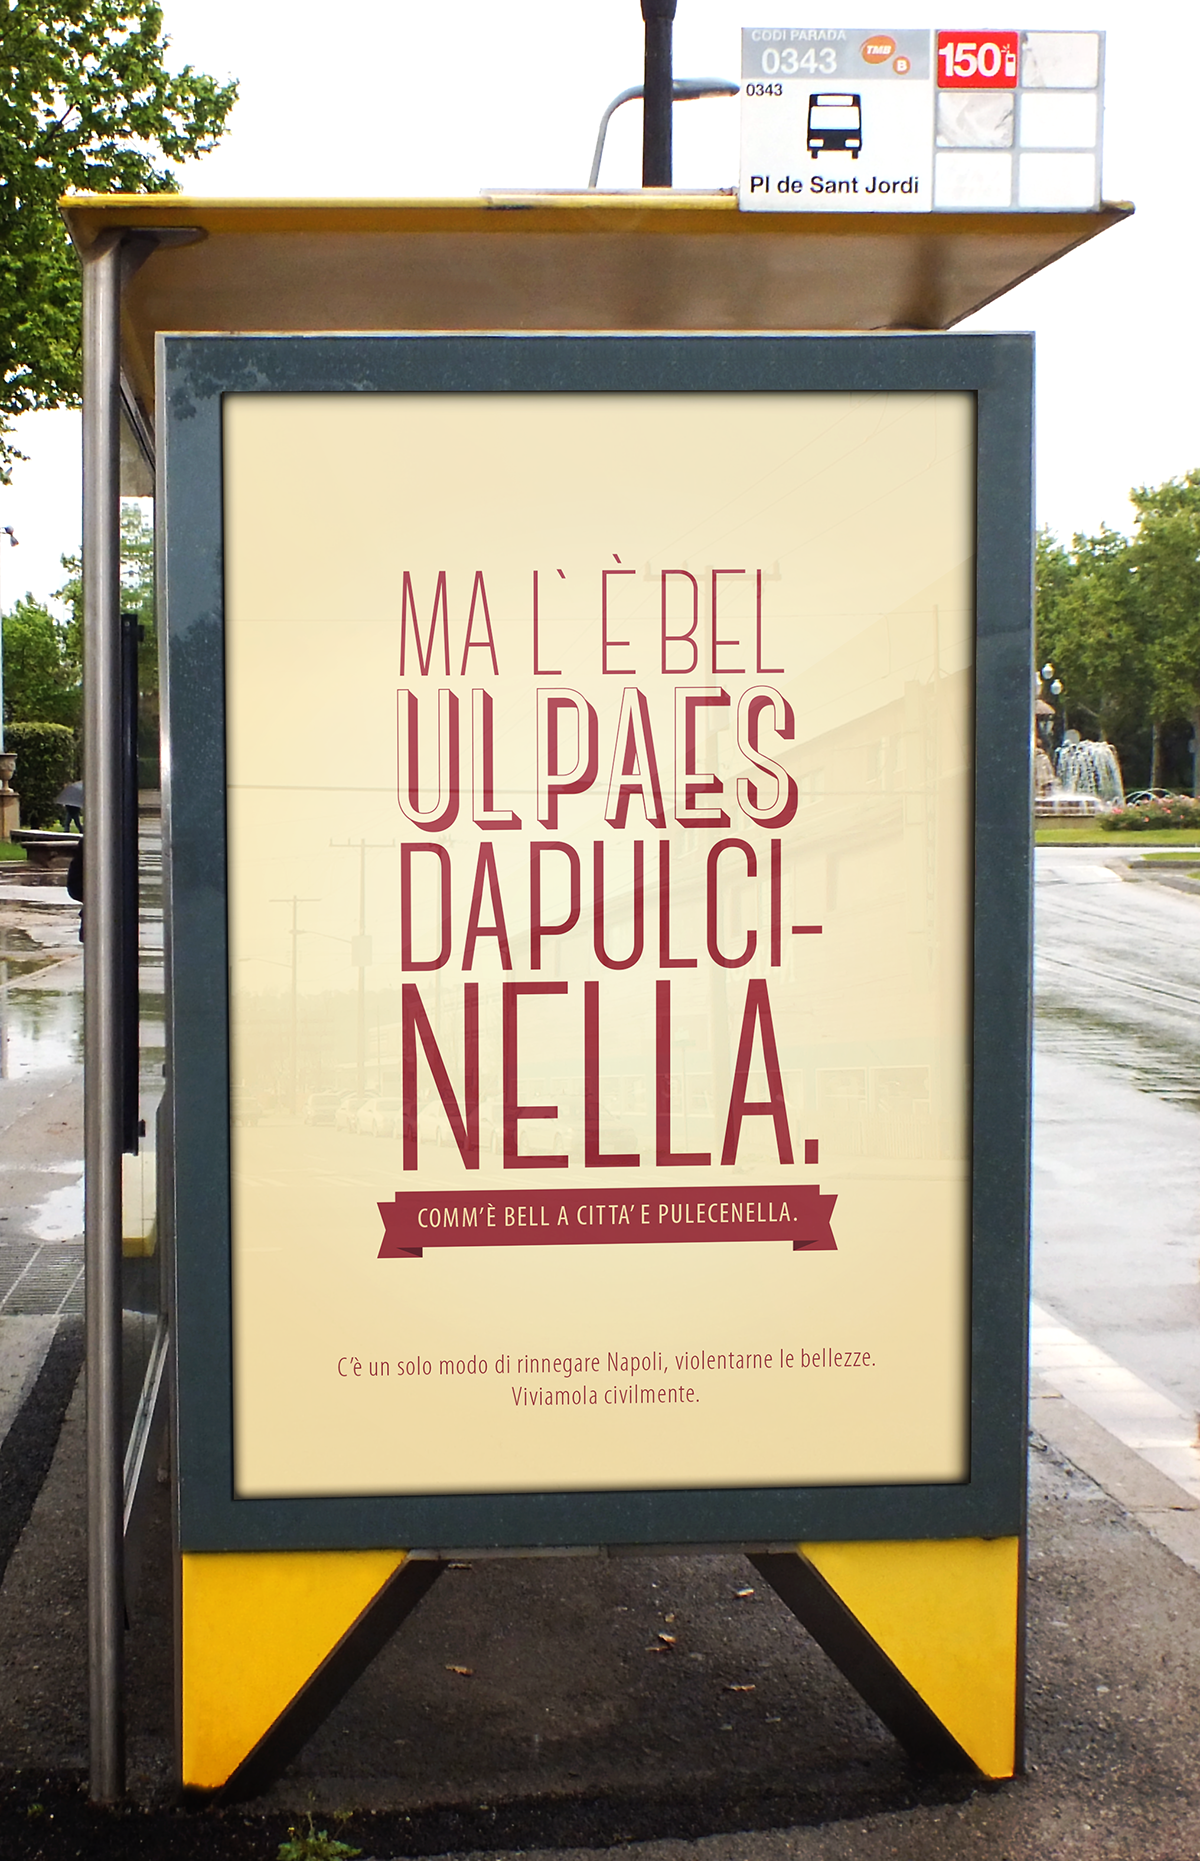 CAMPAIGN FOR THE civic sense campagna sociale campaign Naples ilas NAPOLI pubblicita senso civico